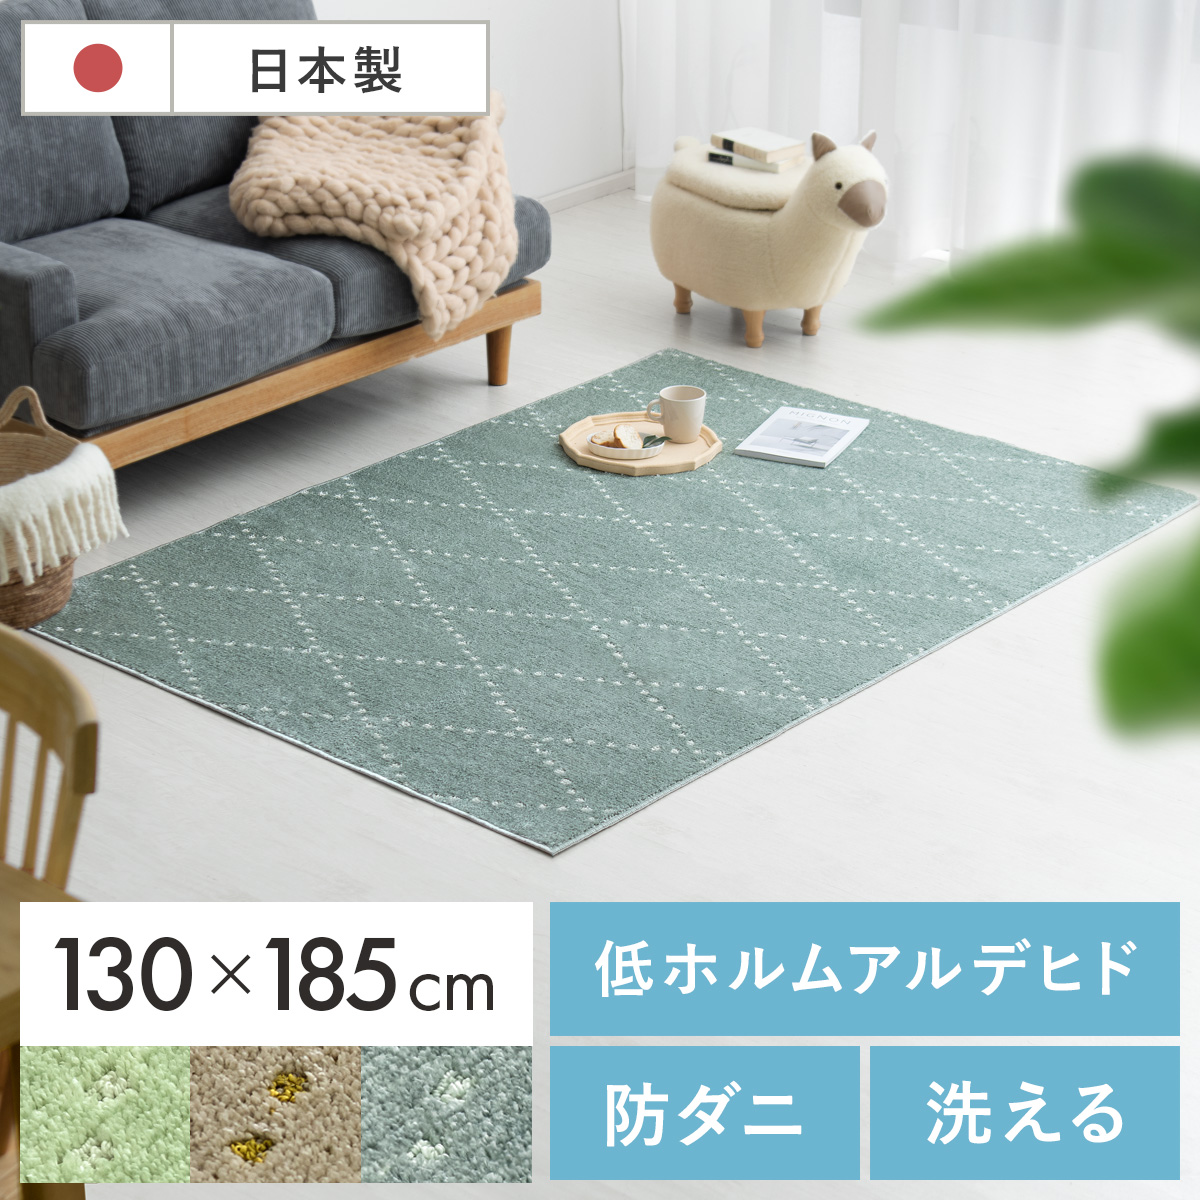 130×185/長方形] 日本製短毛シャギーラグ PONT(ポント) 【公式】 エア・リゾーム インテリア・家具通販